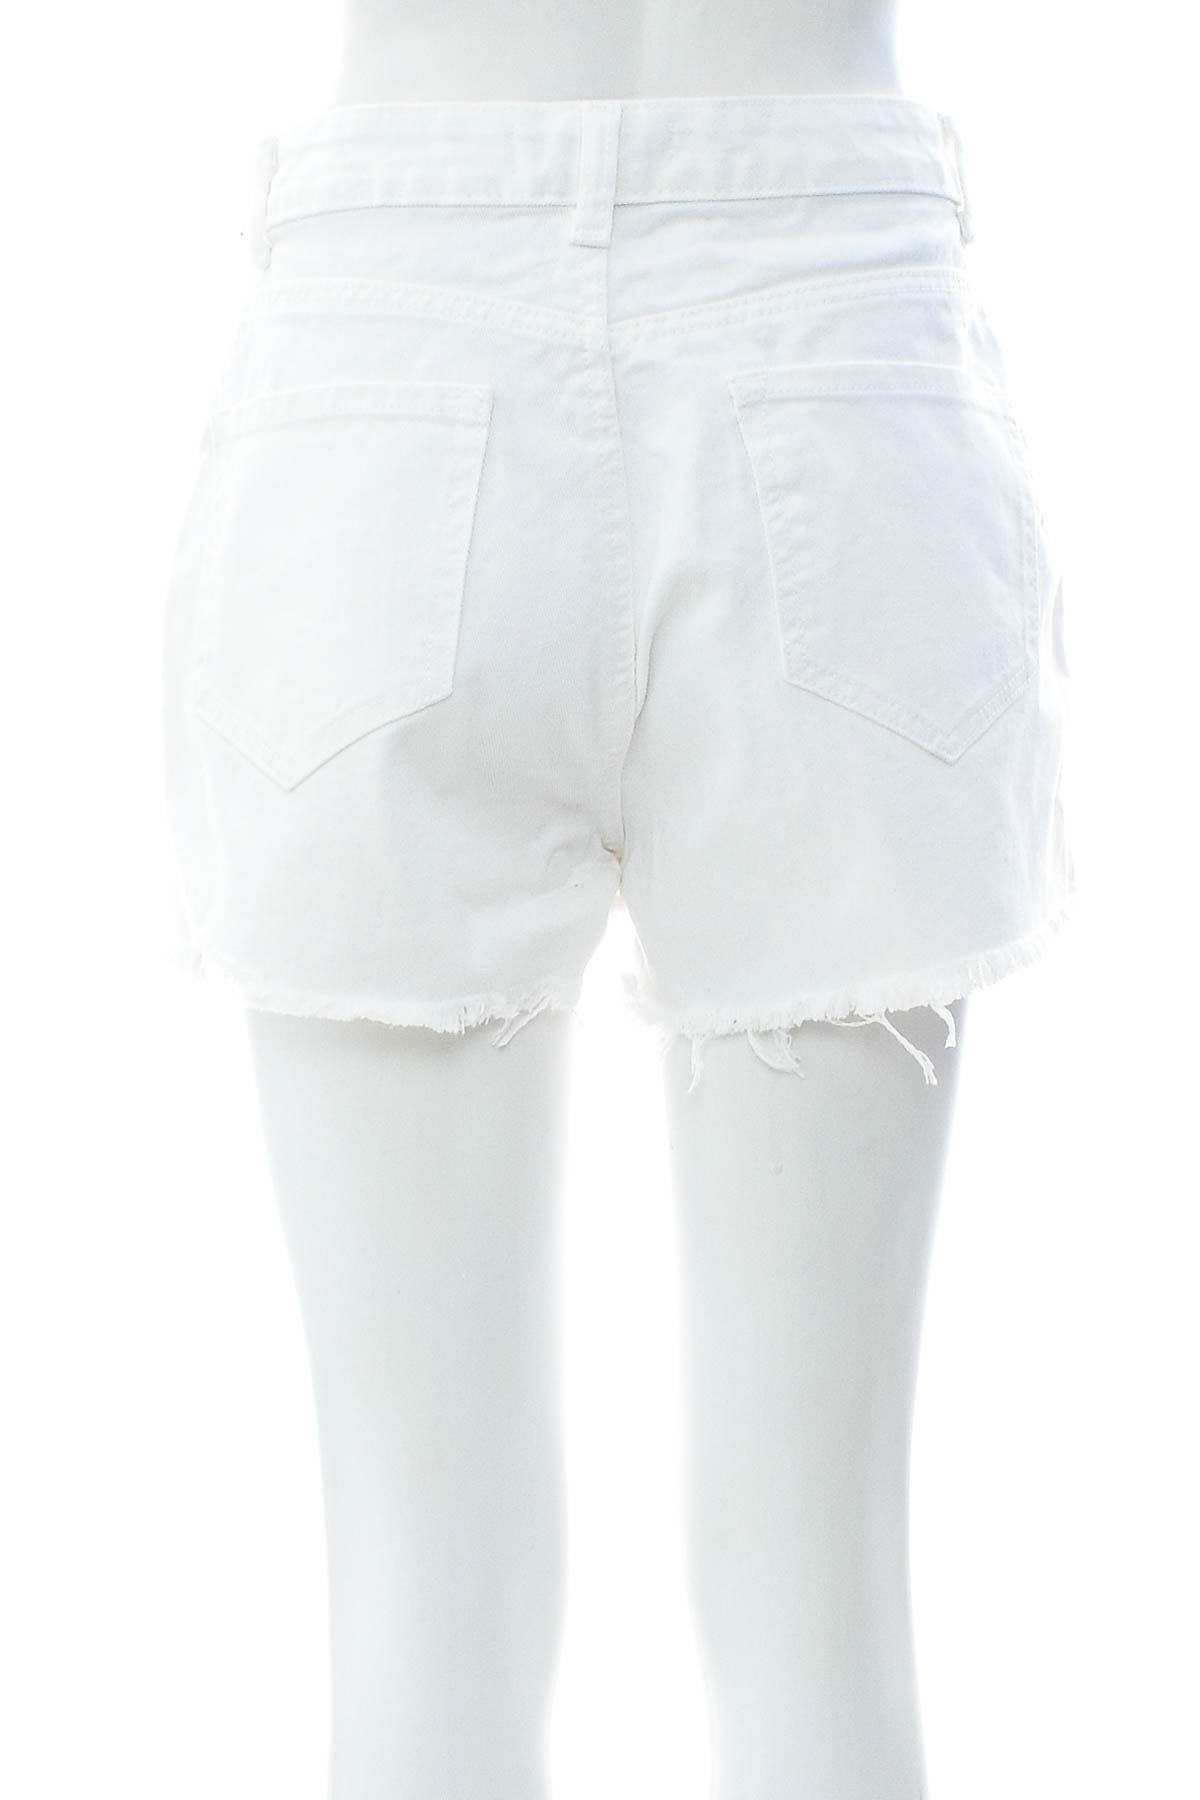 Γυναικείο κοντό παντελόνι - Denim Co. - 1